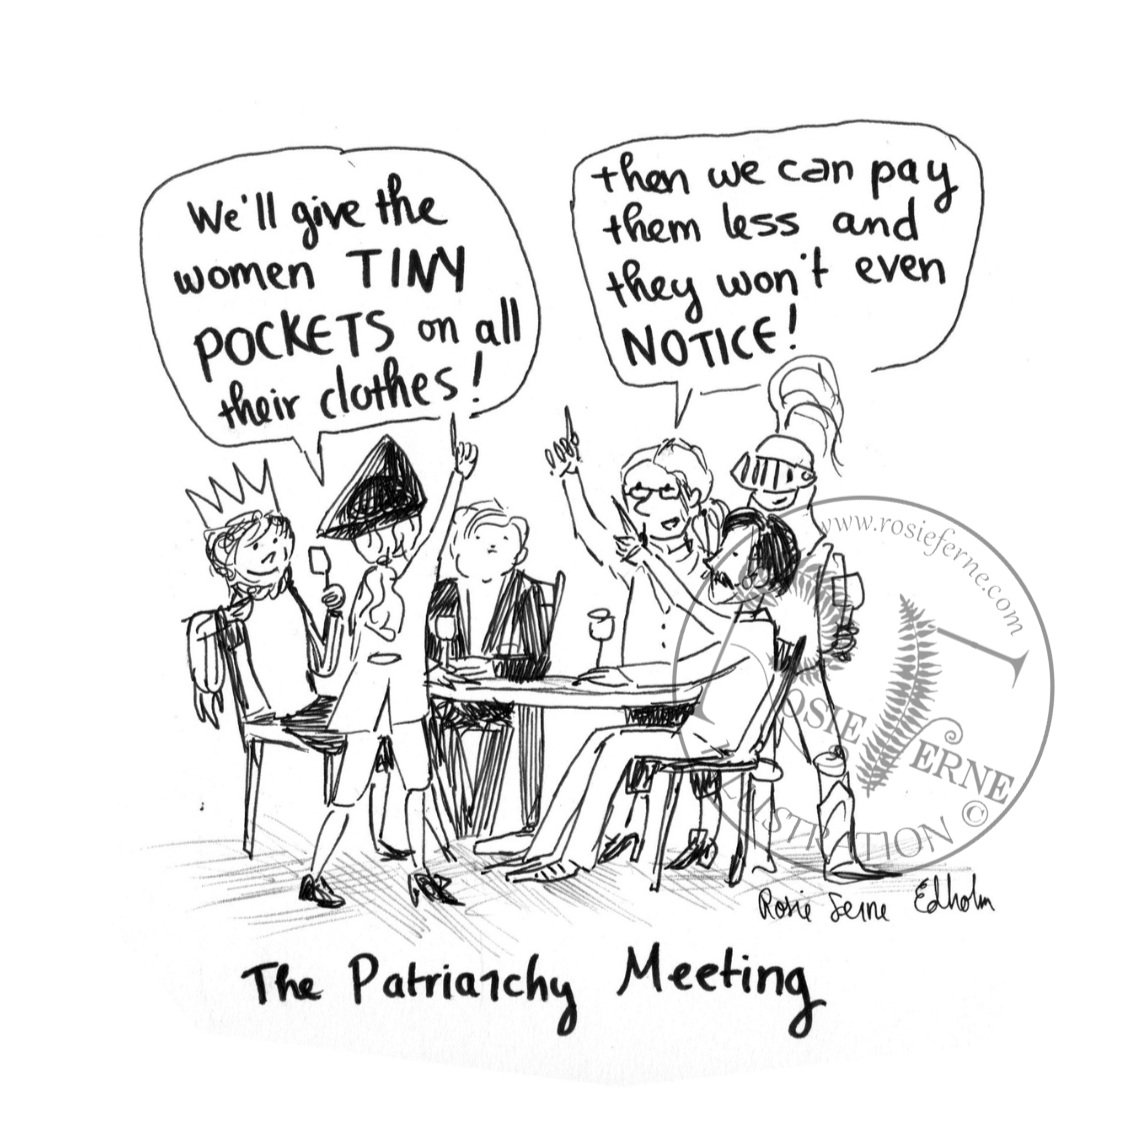 The Patriarchy Meeting: Tiny Pockets